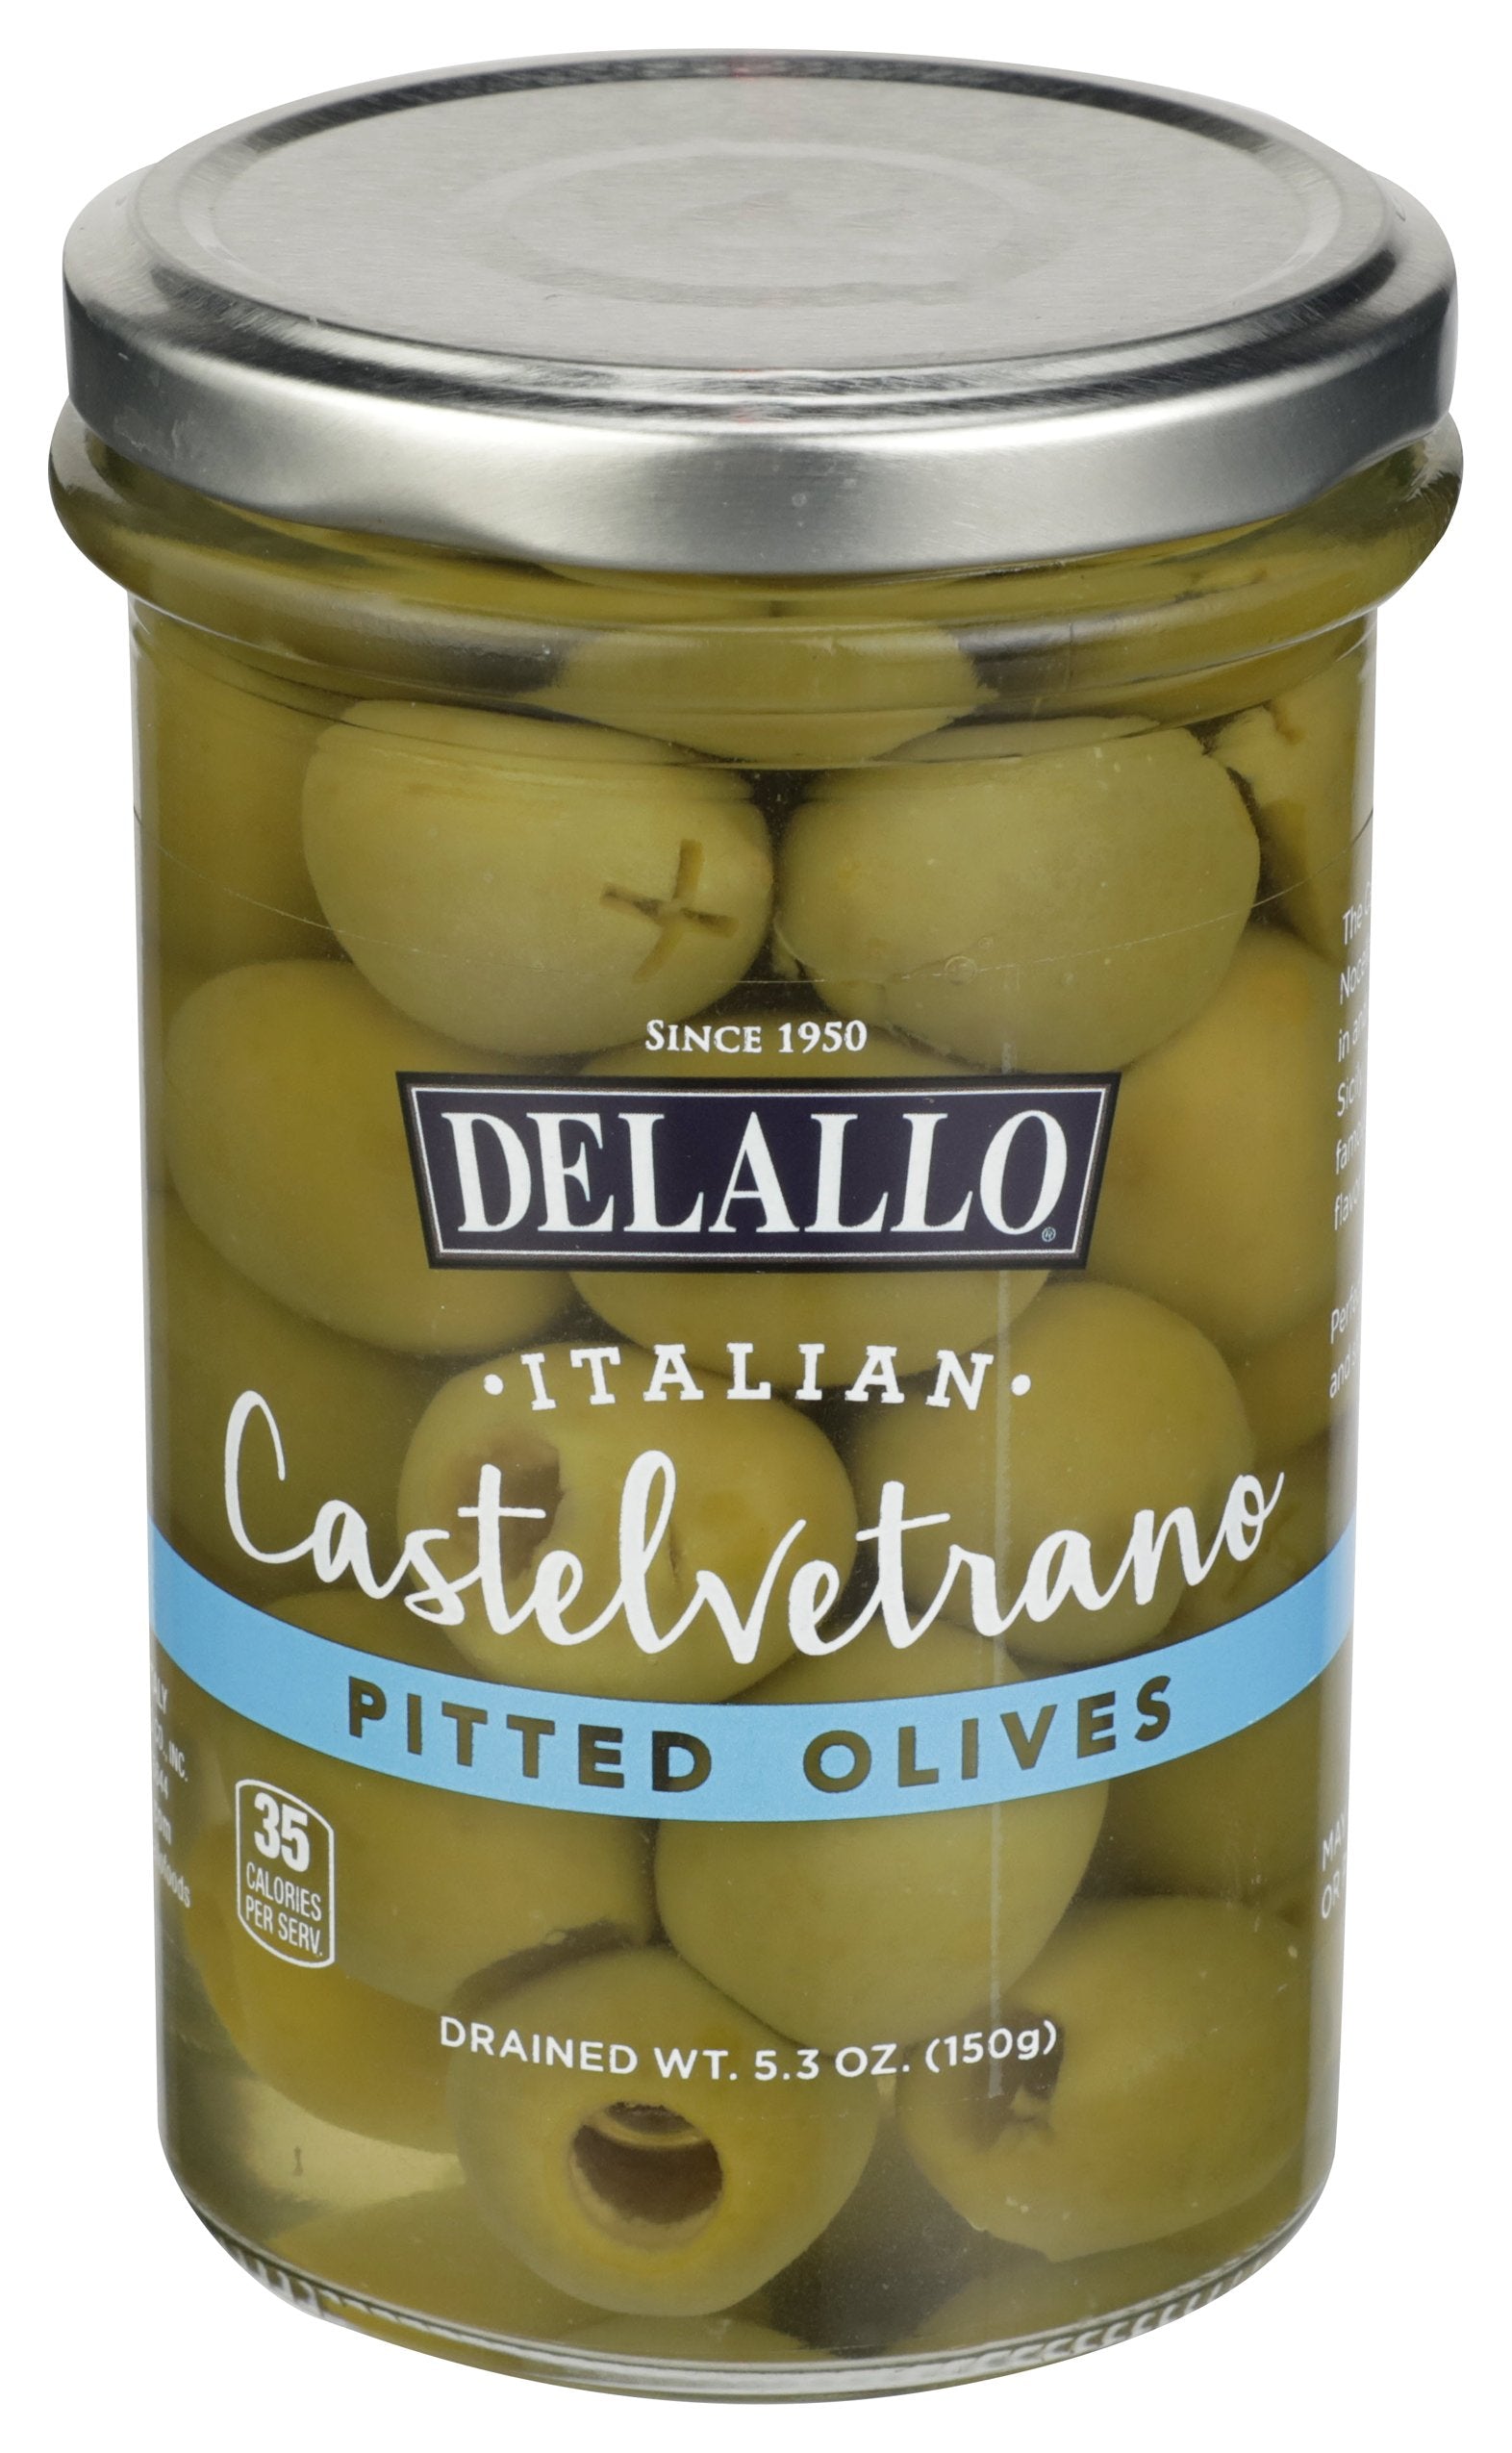 DELALLO OLIVES PITTED CASTLVRTRNO - Case of 6